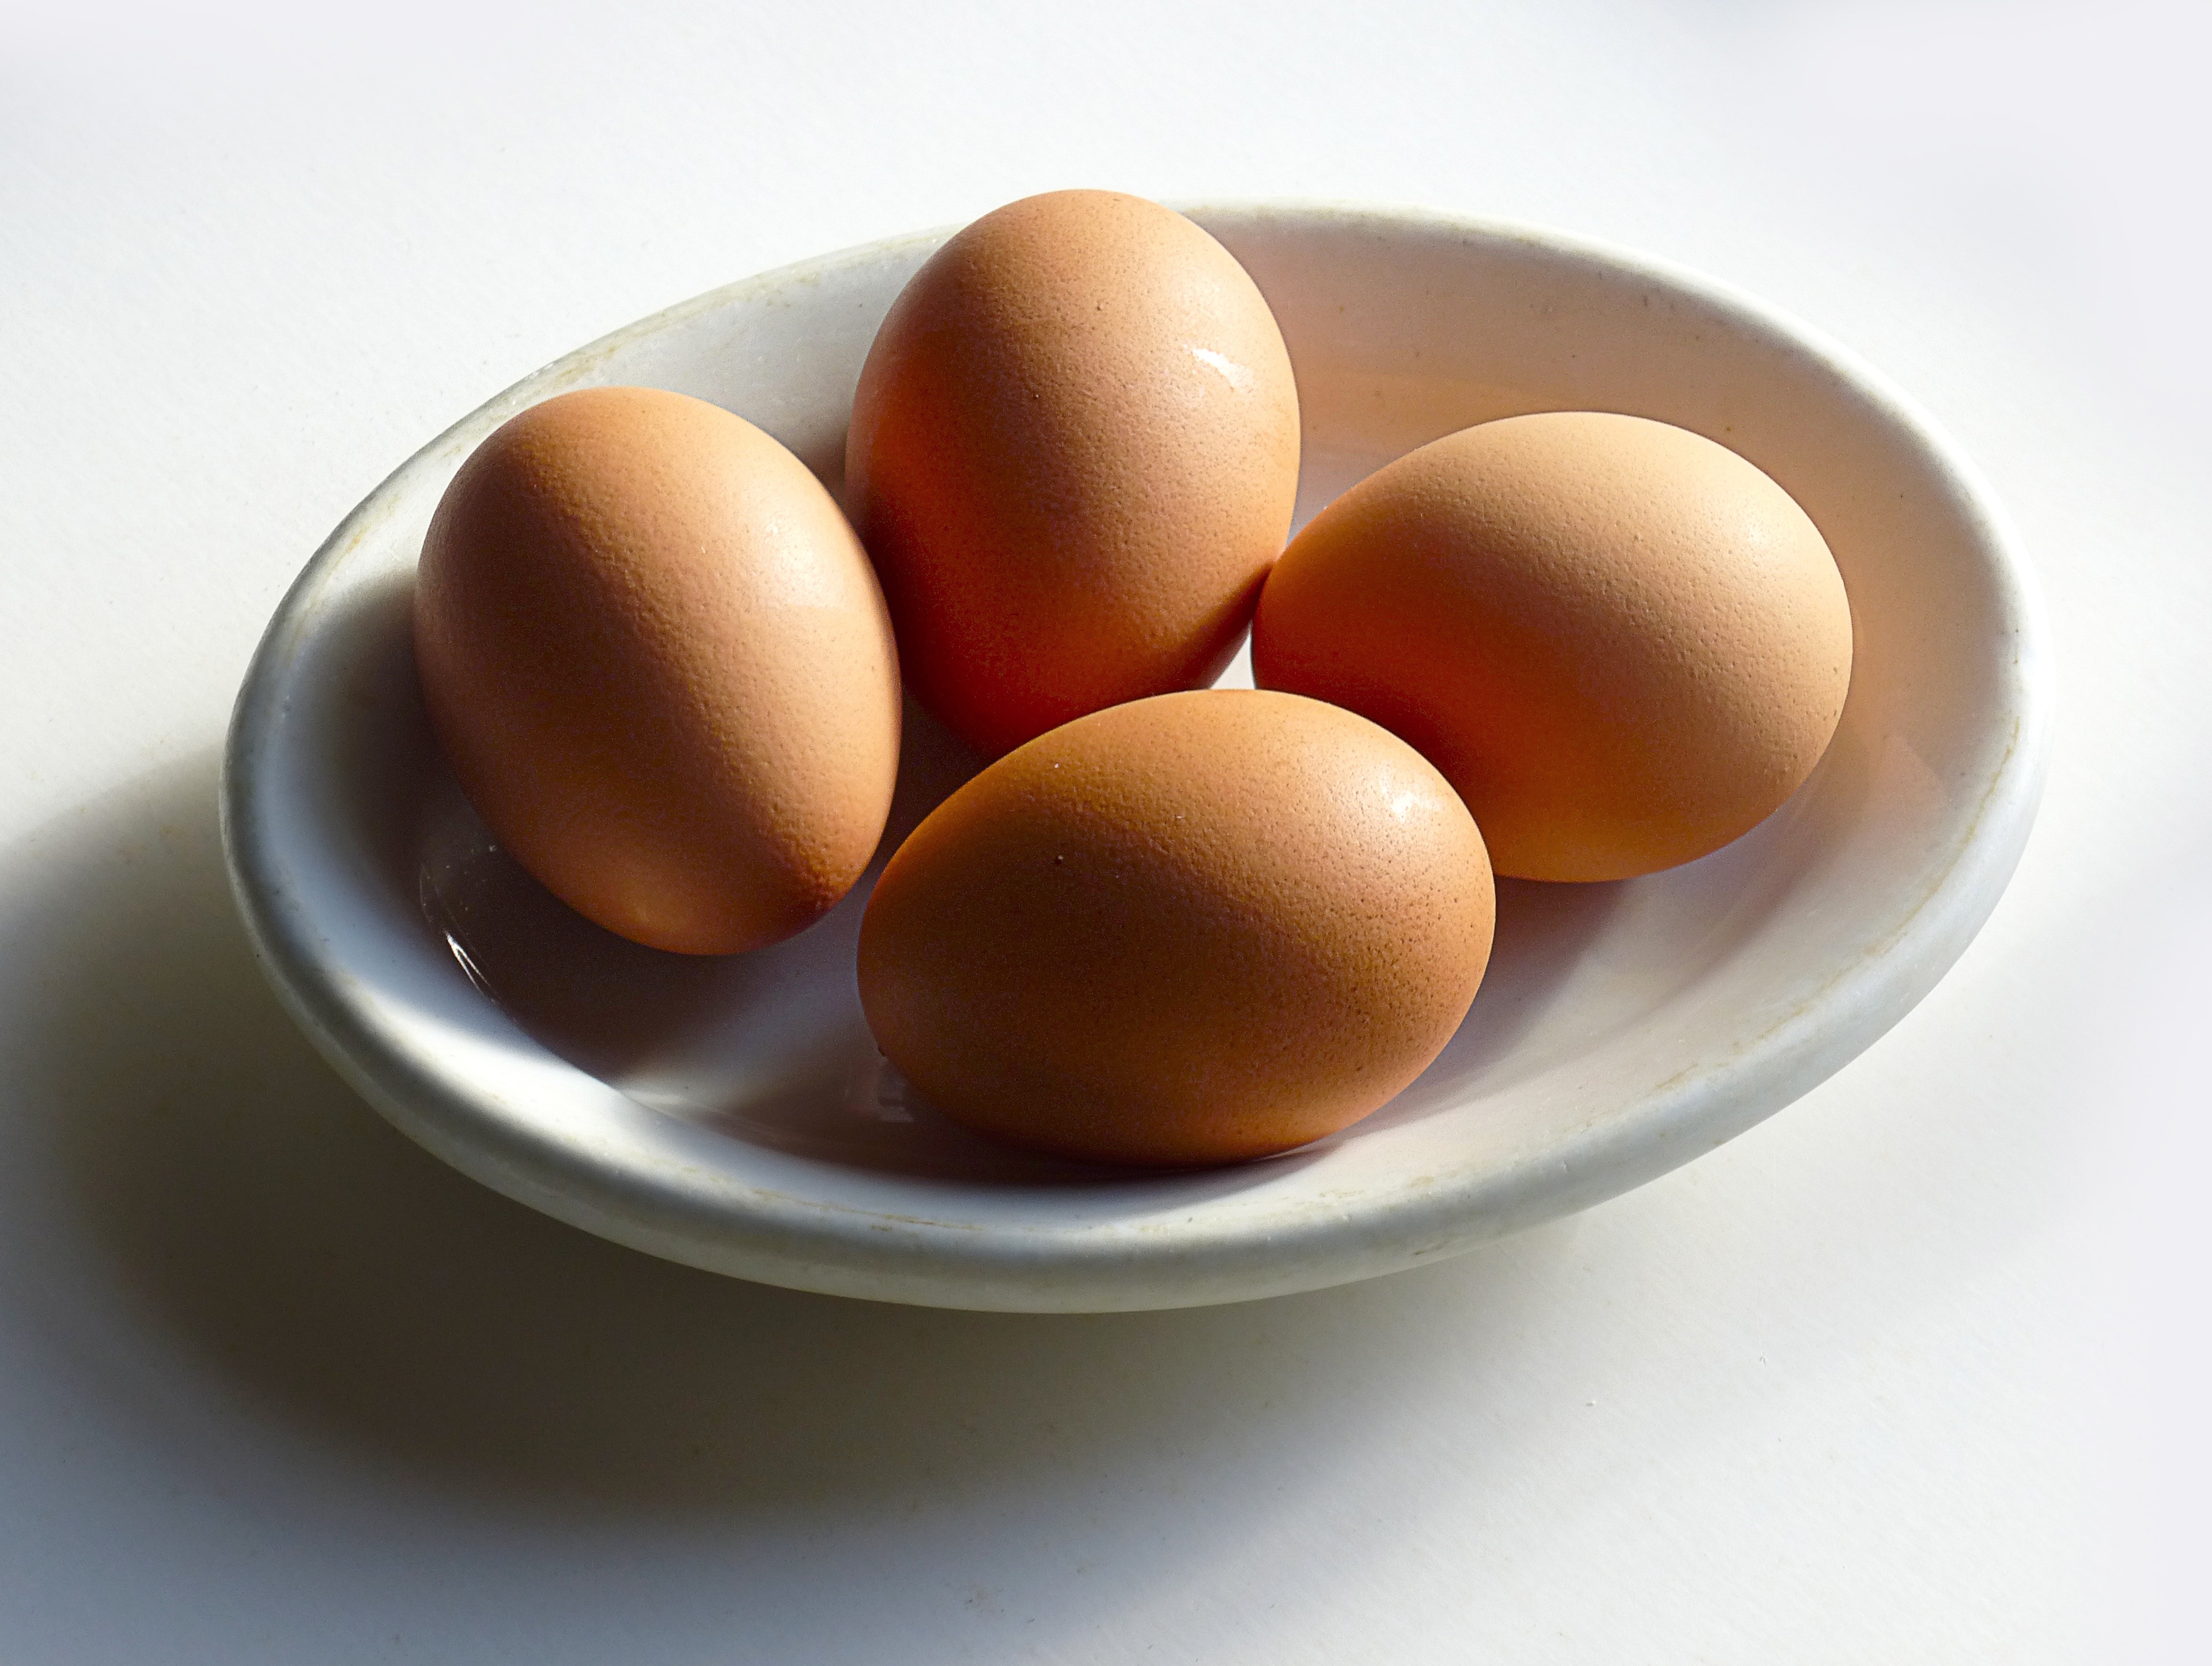 4 brown chicken eggs on white ceramic saucer